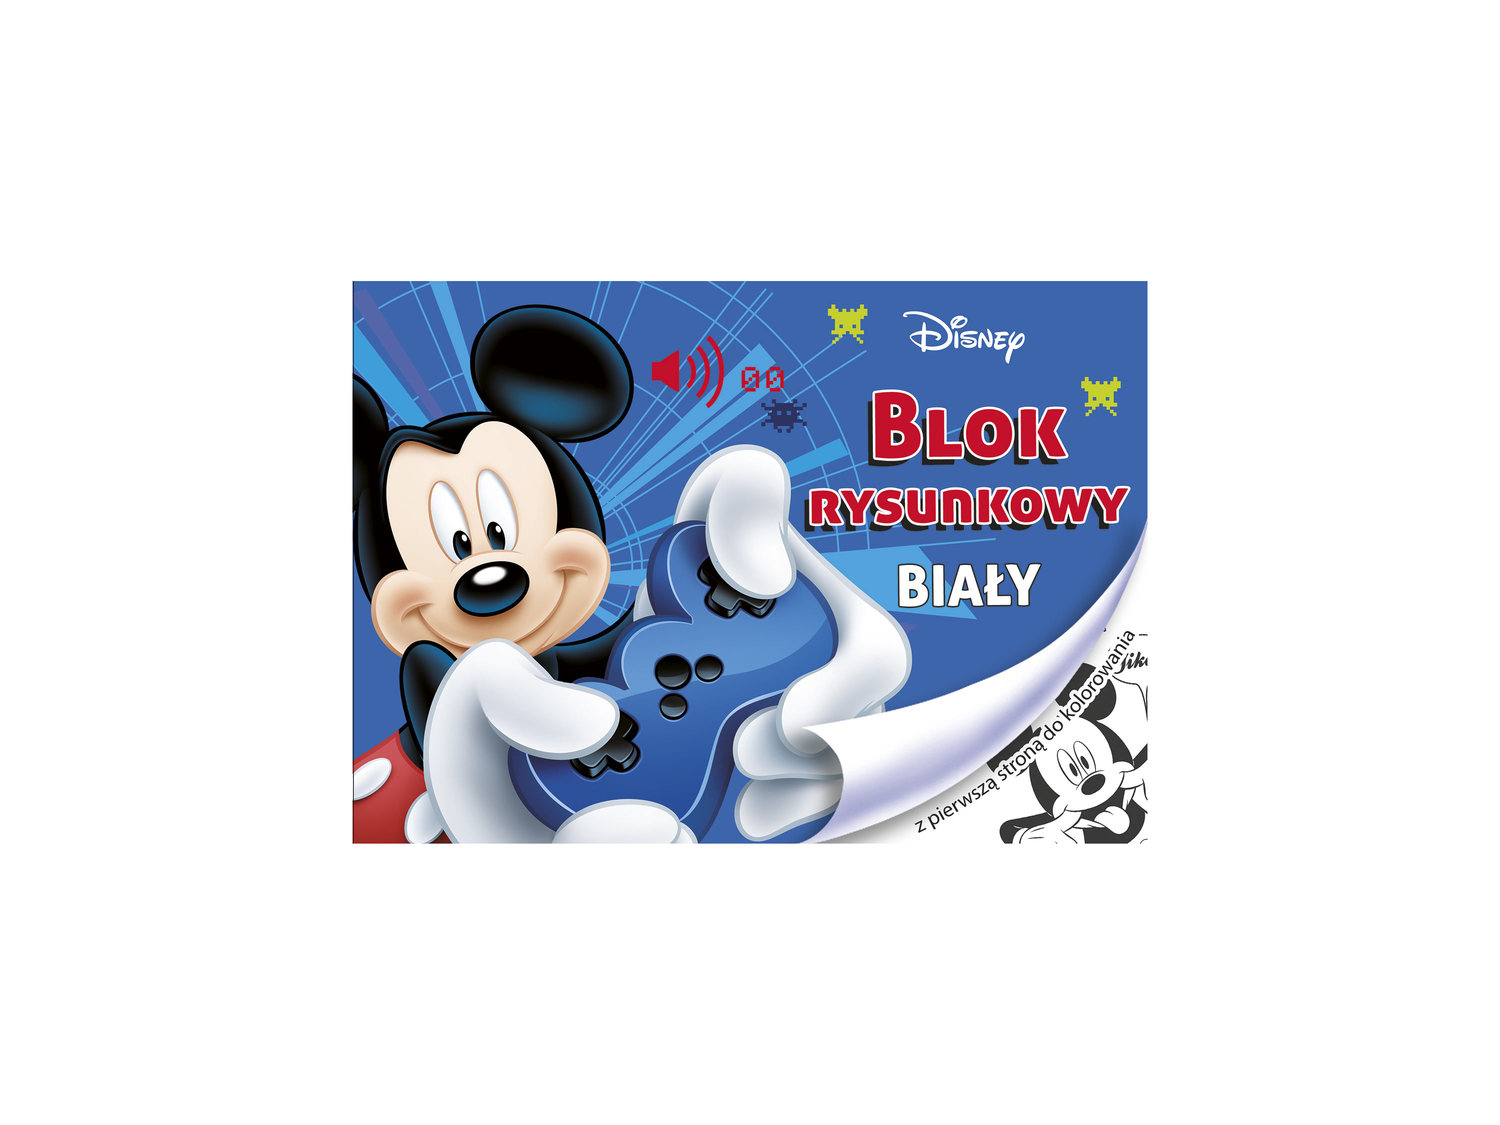 Blok A4 Disney rysunkowy, 20 kartek , cena 1,29 PLN  
-  kolorowanka na pierwszej stronie